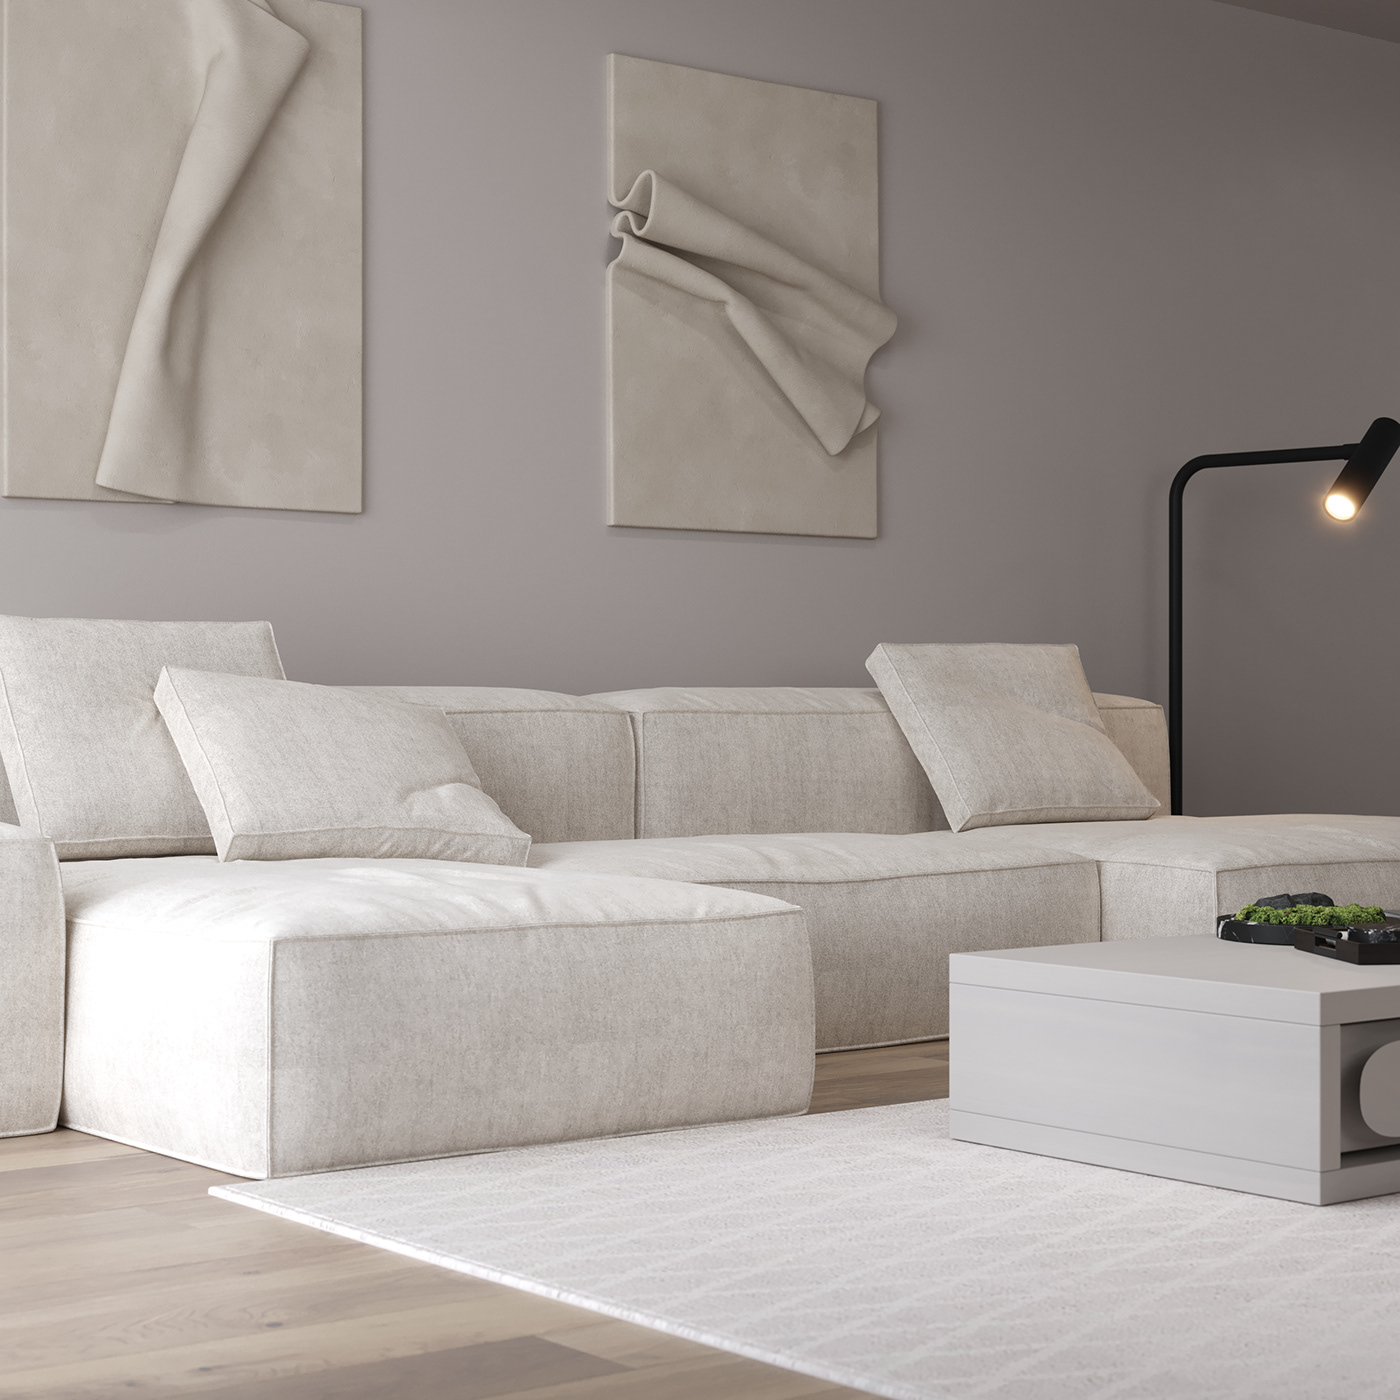 3ds max Render interior design  visualization corona